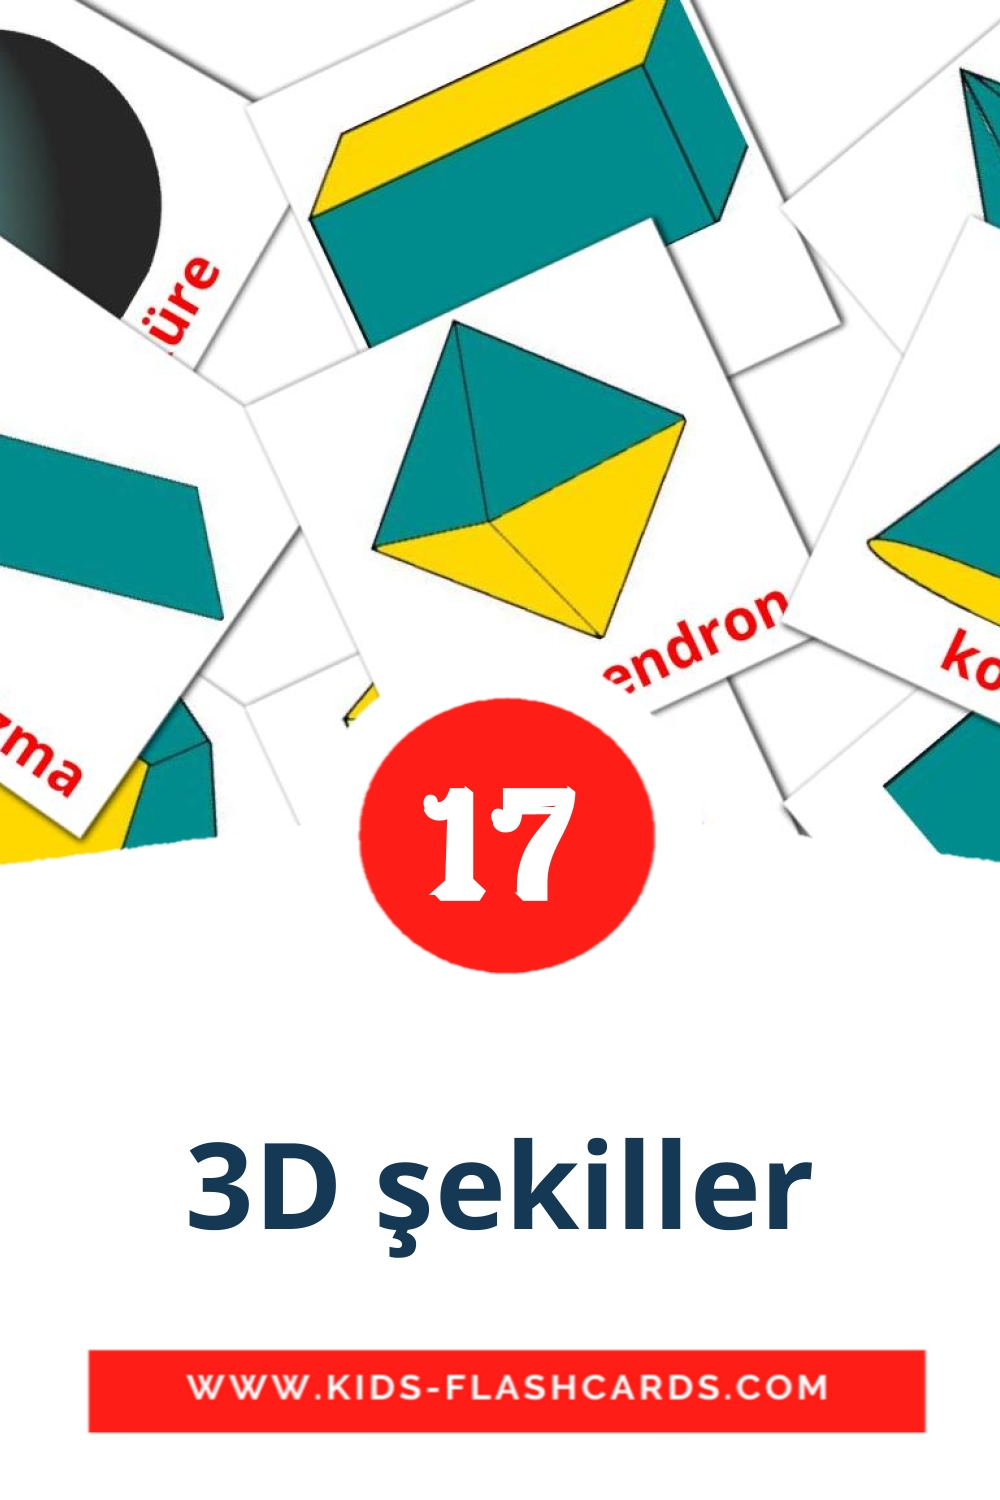 17 3D şekiller fotokaarten voor kleuters in het turkse